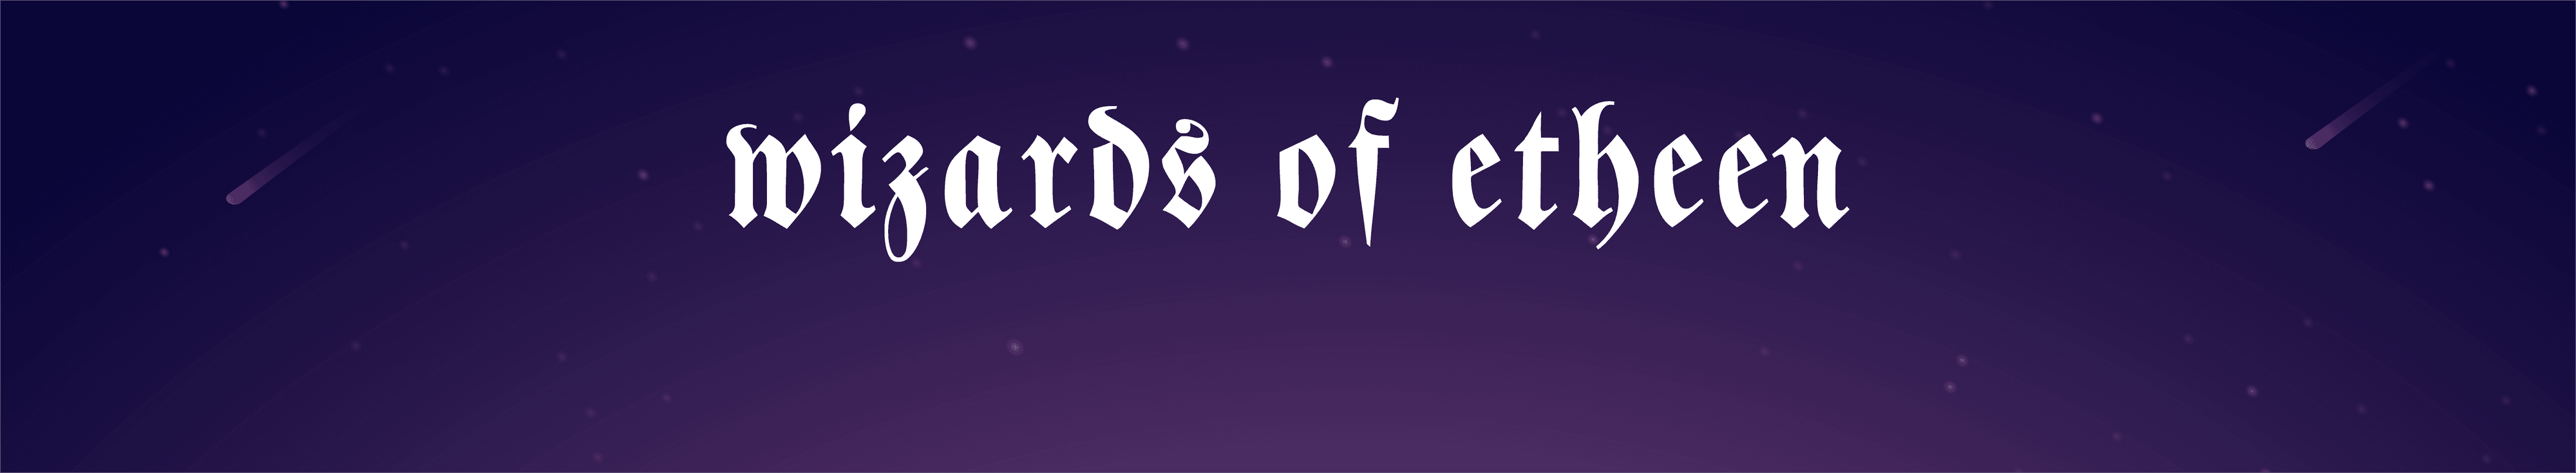 Wizards_of_Etheen banner